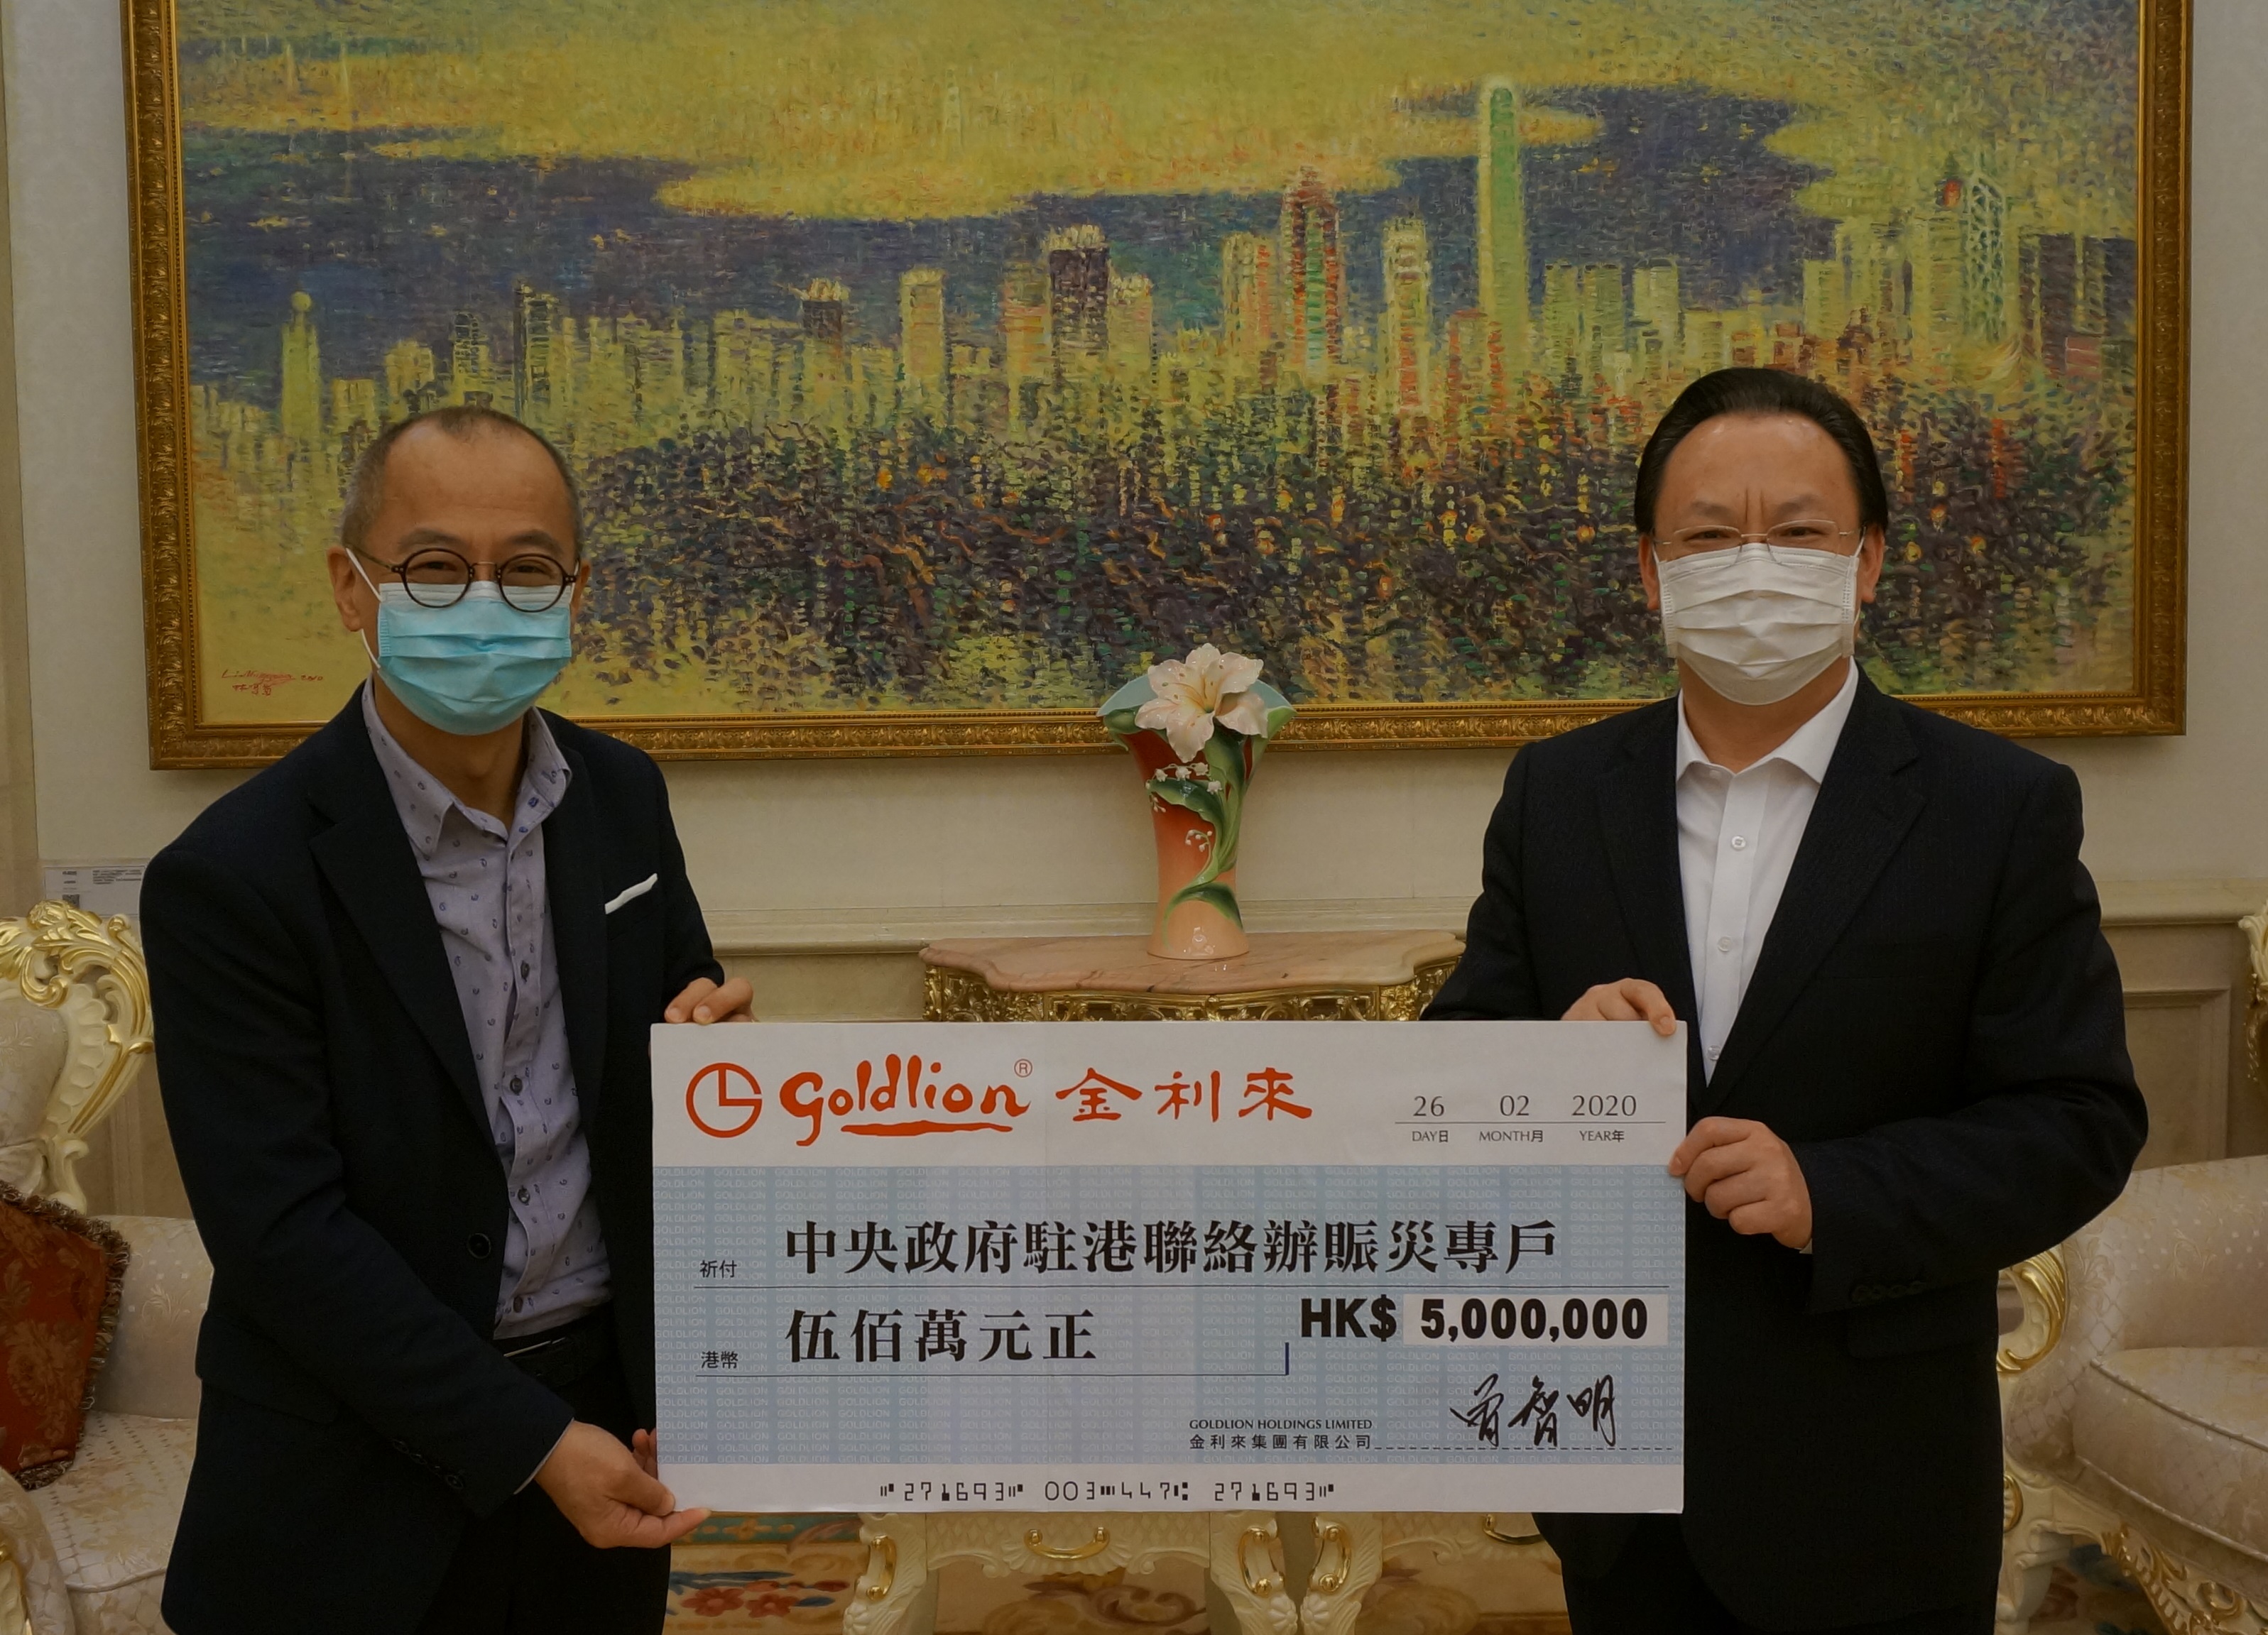 曾智谋(左)代表曾智明向中联办副主任谭铁牛(右)递交支持内地抗疫捐款港币500万元